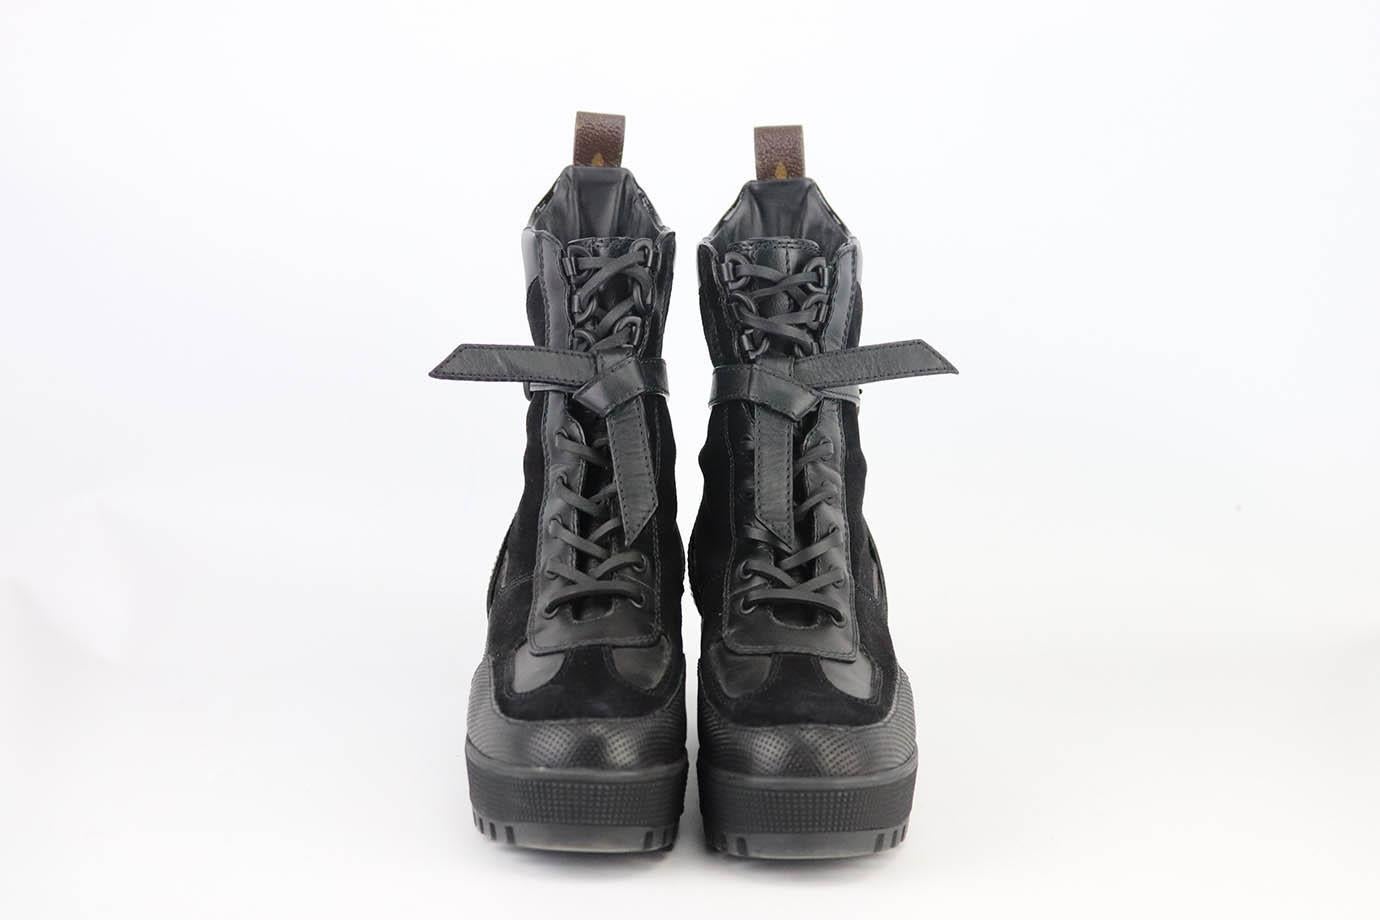 Pre-owned Louis Vuitton Platform Desert Boots – Sabrina's Closet